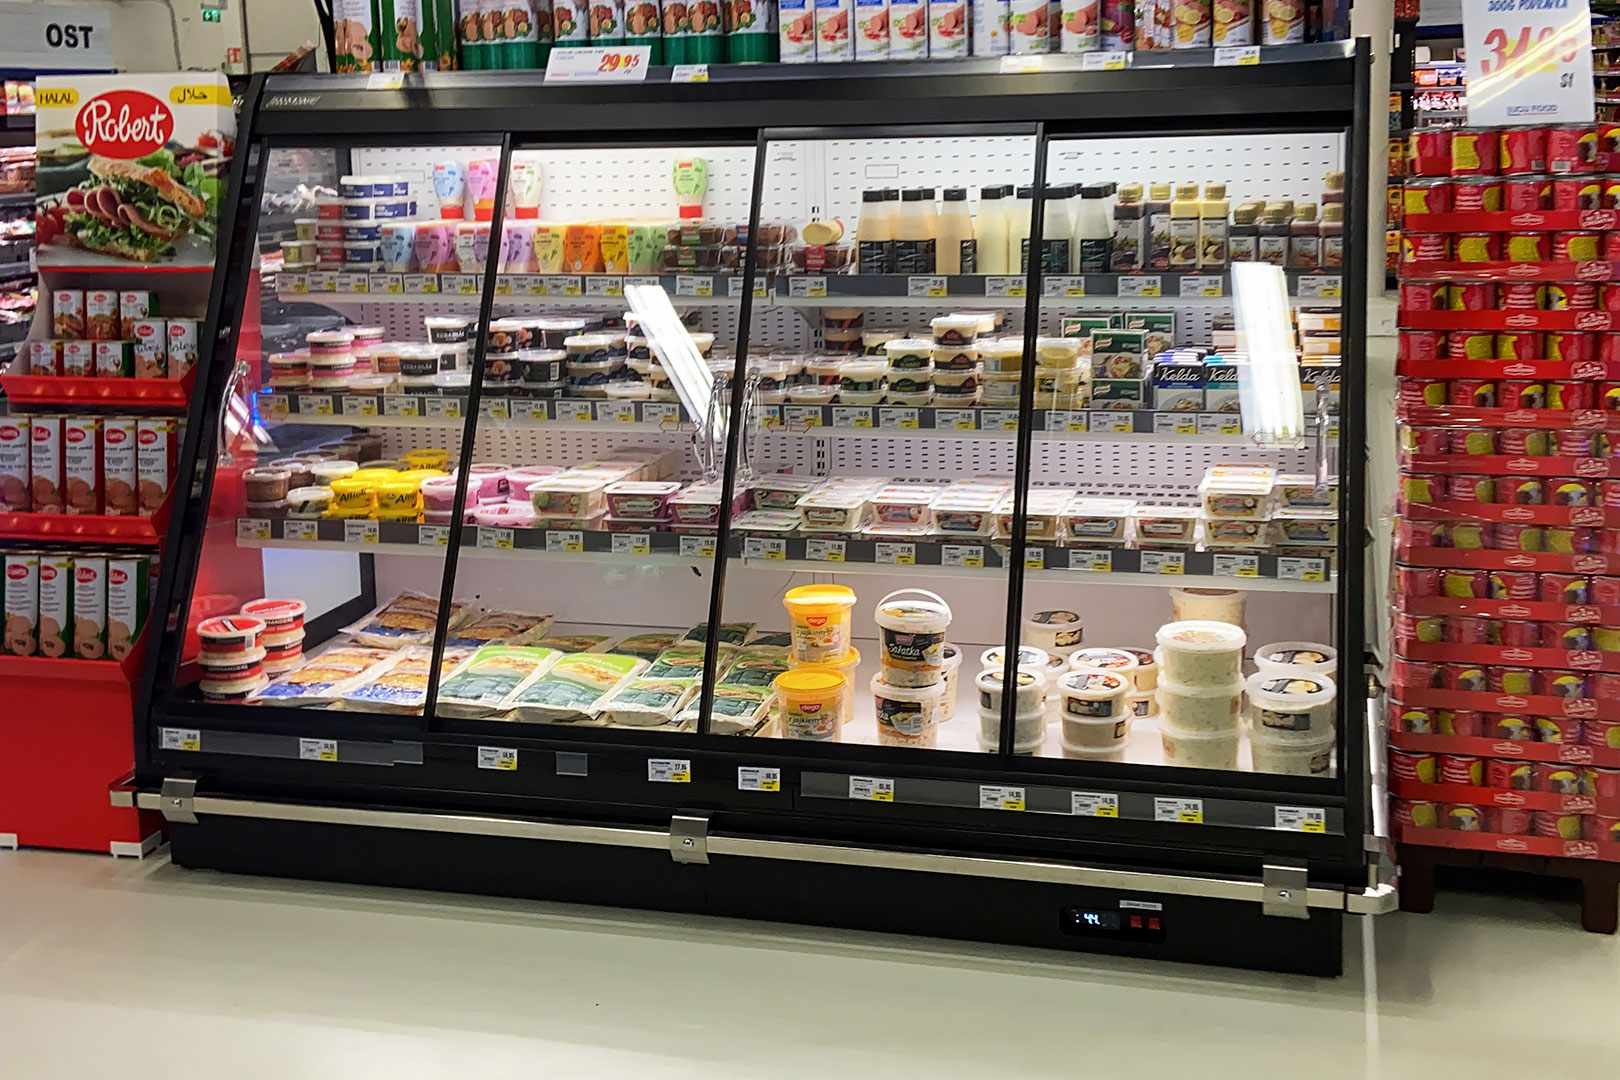 Niskie regały chłodnicze Louisiana eco MSV 105 MT D, supermarket (Szwecja)